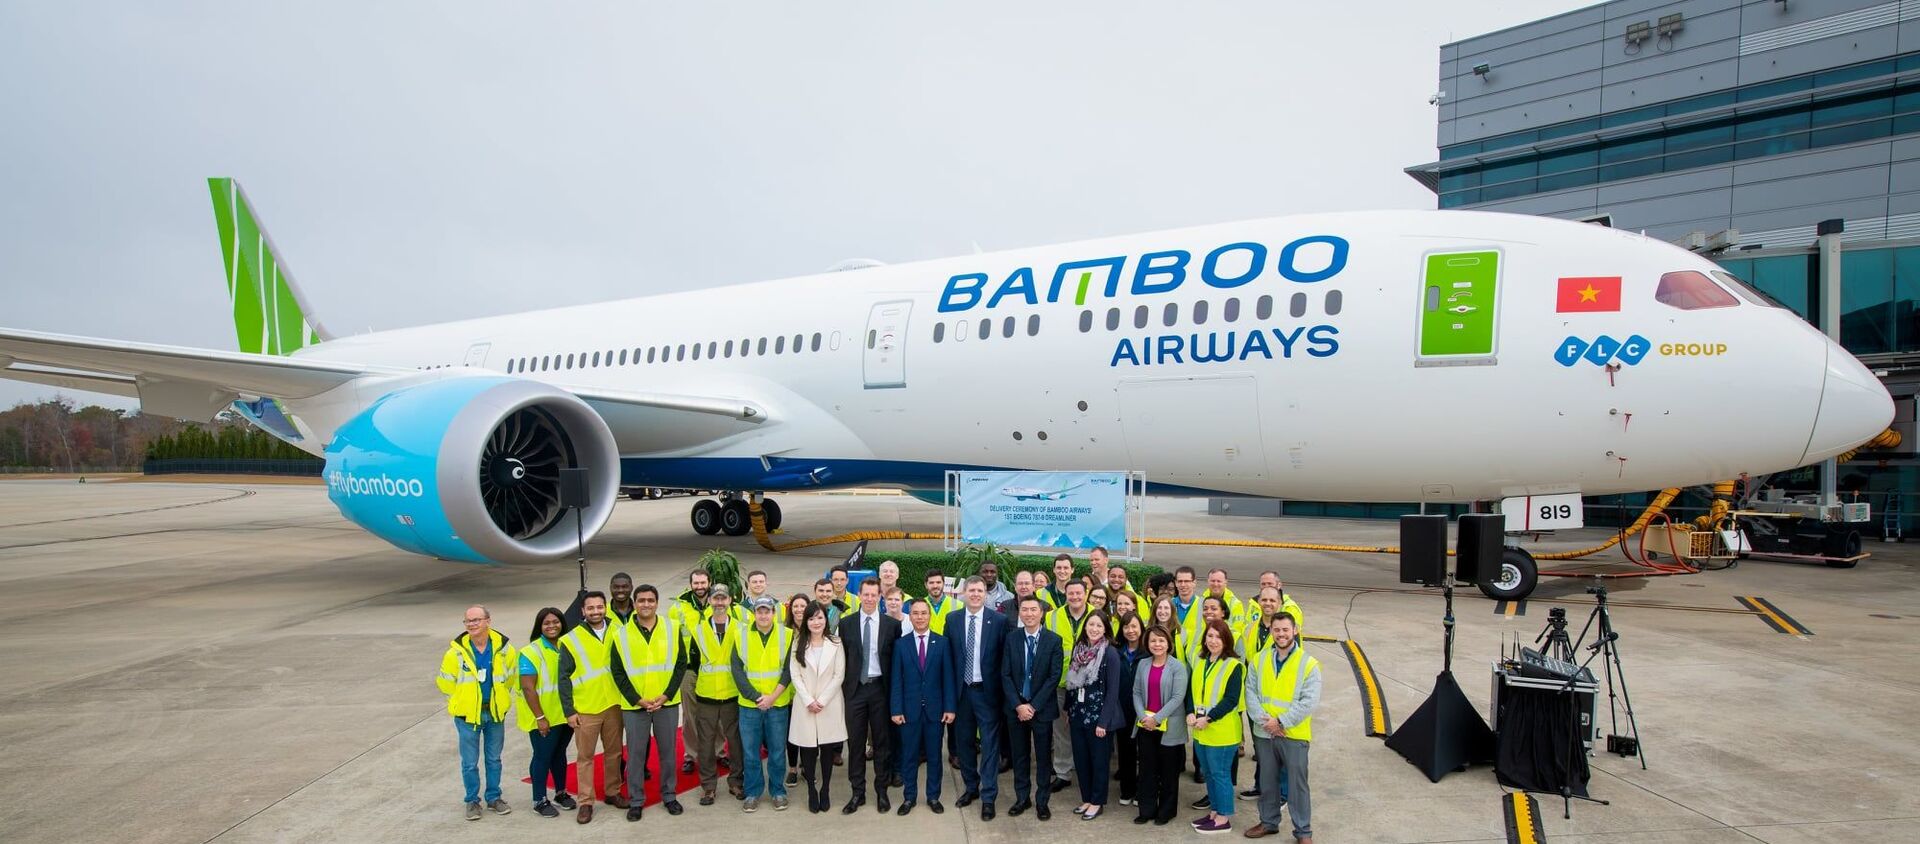 Bamboo Airways chính thức nhận máy bay Boeing 787-9 Dreamliner đầu tiên từ Tập đoàn máy bay Boeing tại Trung tâm bàn giao của Hãng ở South Carolina, Mỹ - Sputnik Việt Nam, 1920, 10.12.2019